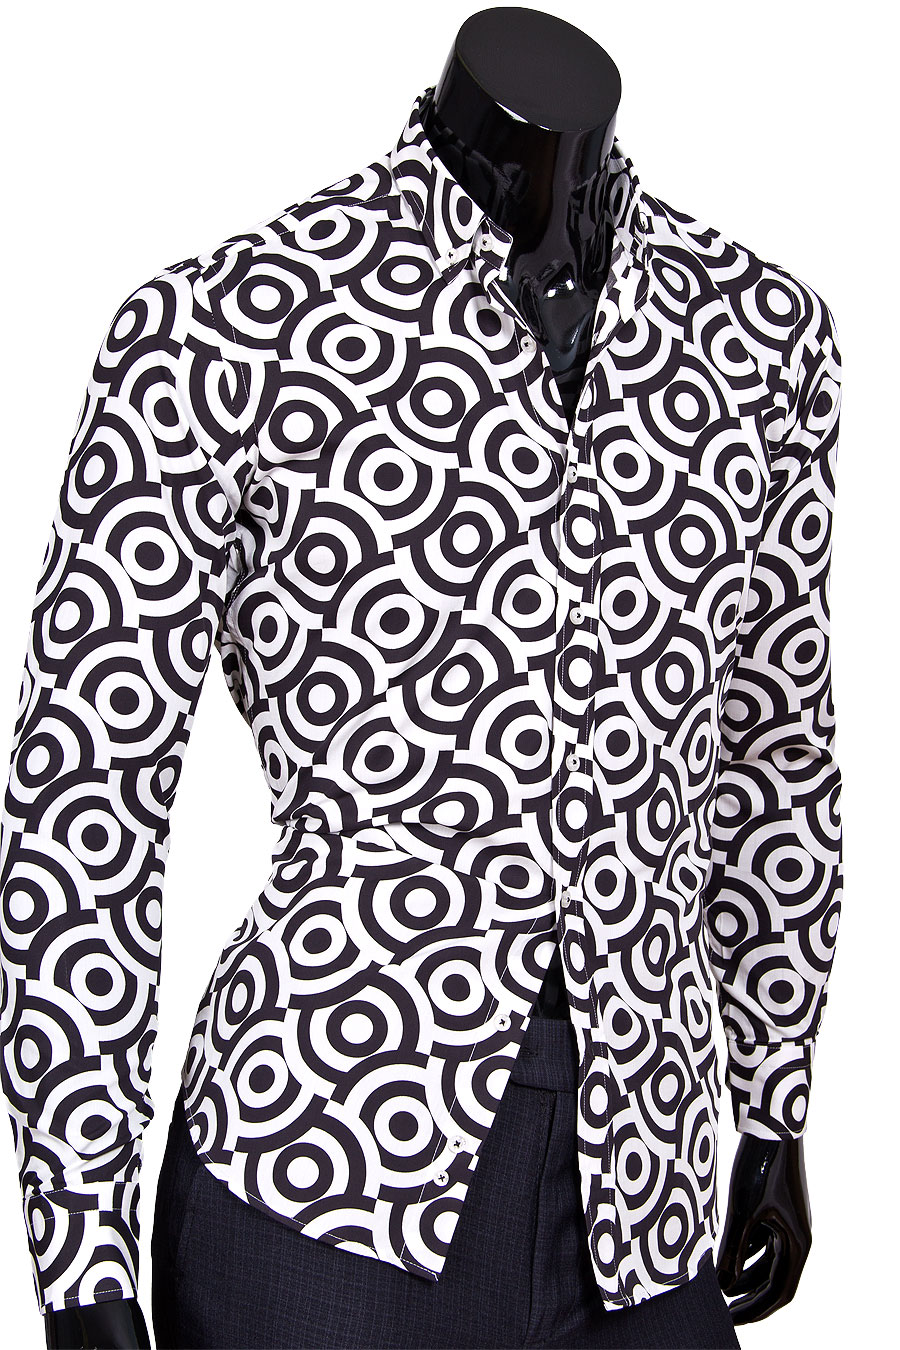 Рубашка Marcel Massimo приталенная цвет черно белый в геометрических фигурах купить в Москве недорого